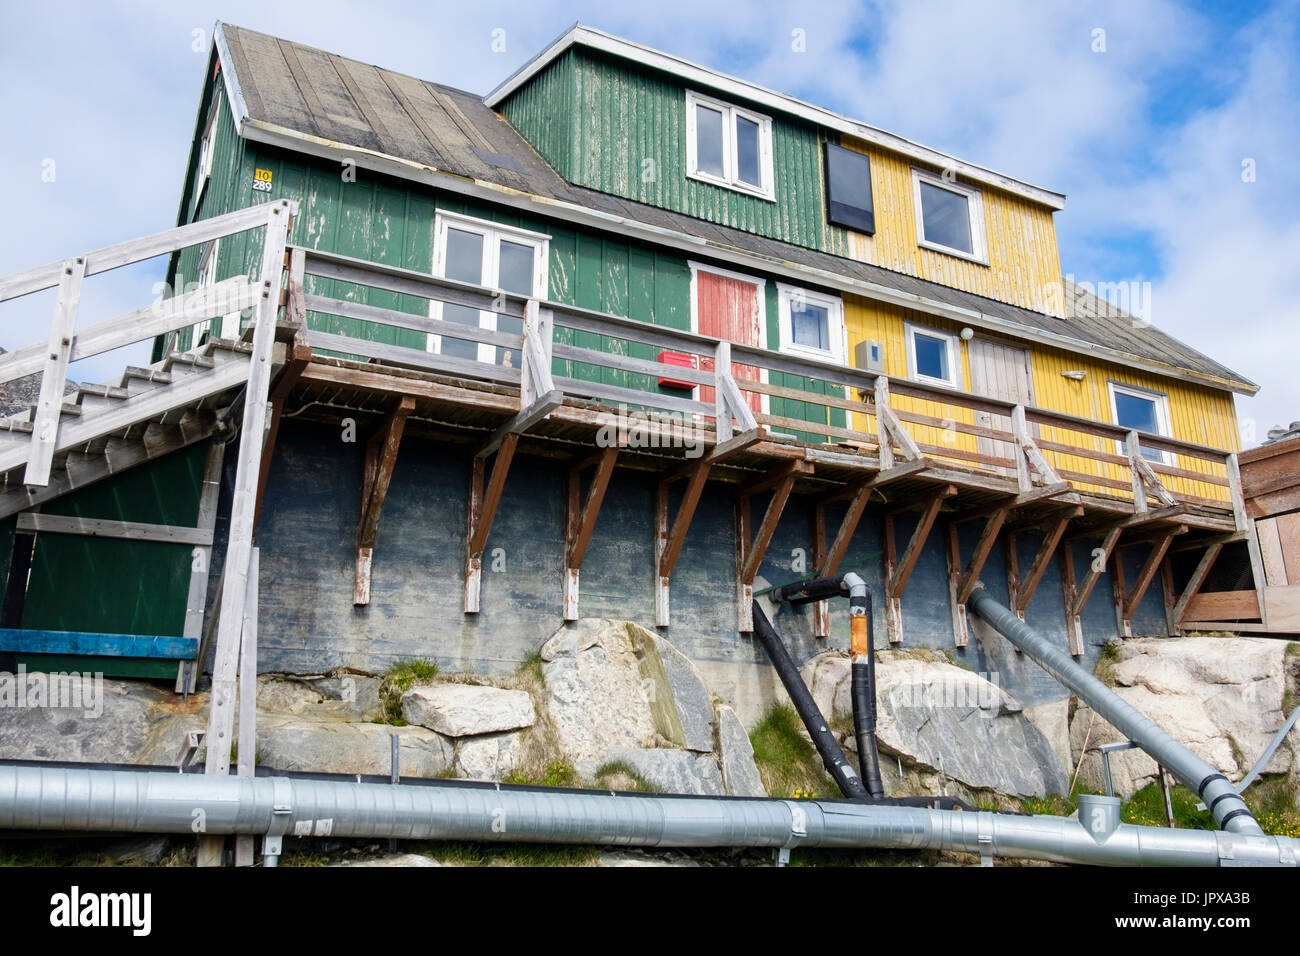 Les Inuits typiques maisons construites à partir de bois et de béton avec hors-sol des tuyaux pour l'eau et les déchets. Paamiut (Frederikshåb), Sermersooq, au Groenland. Banque D'Images